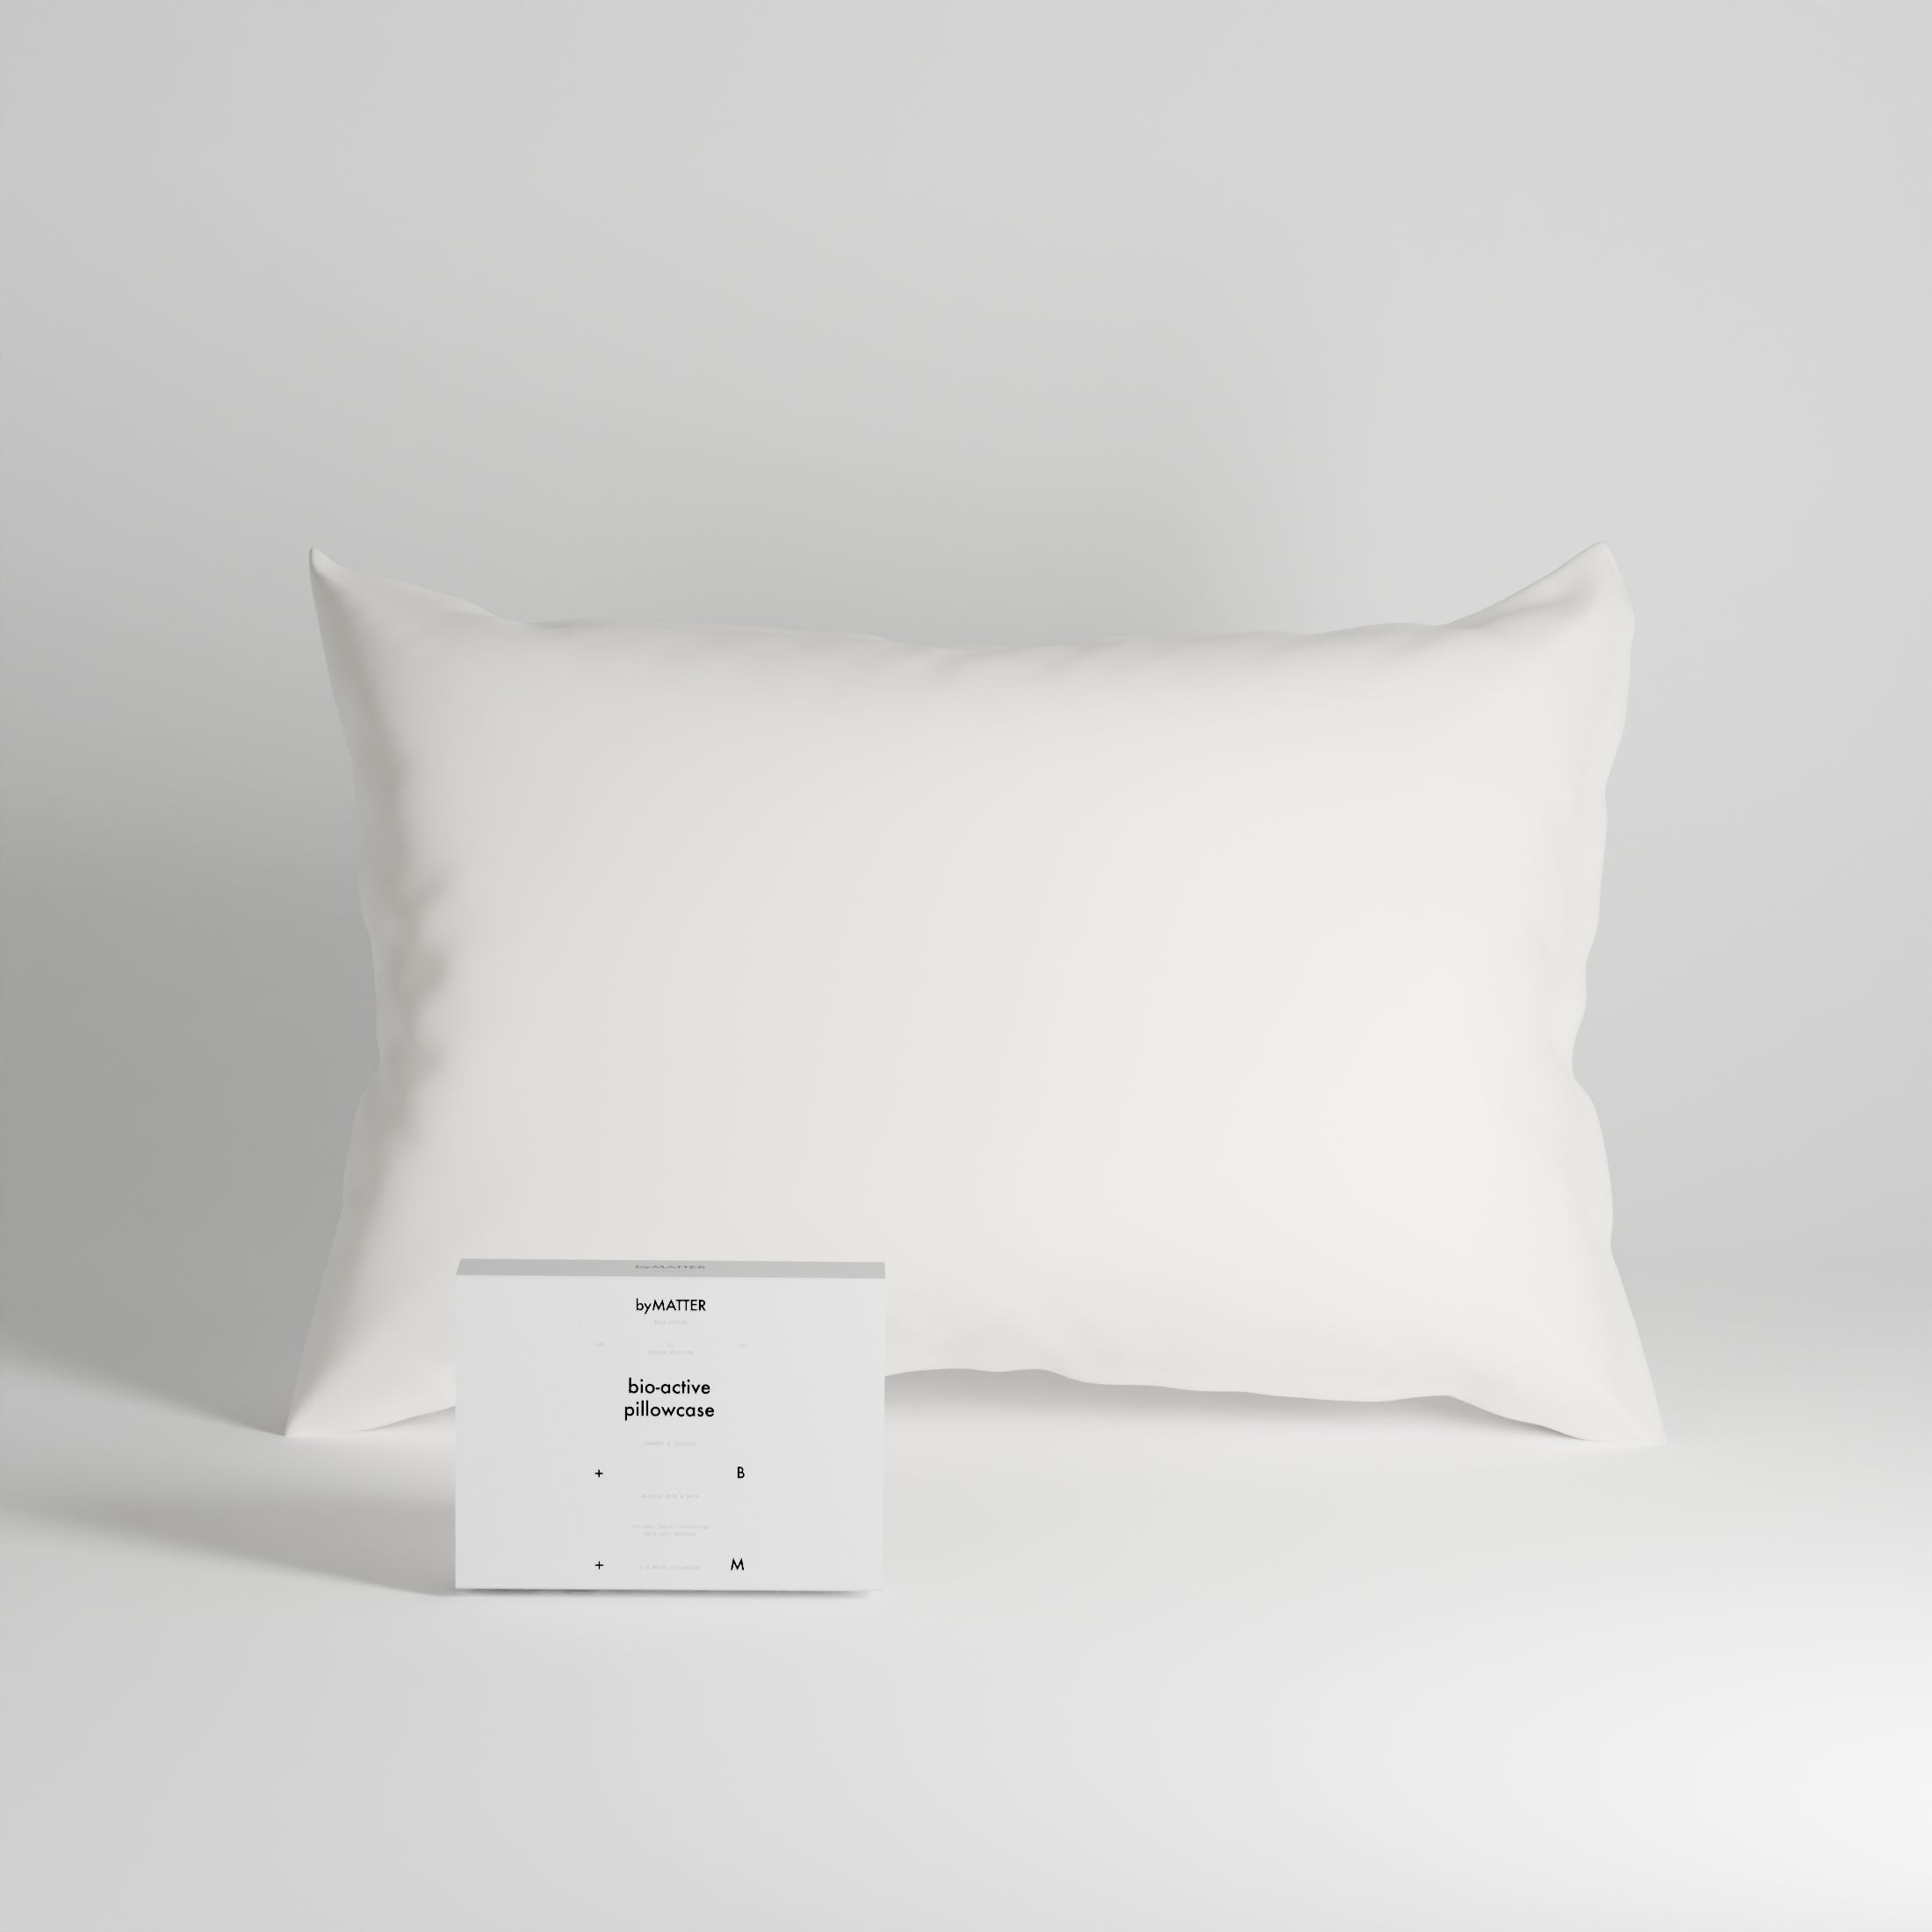 bio-active pillowcase